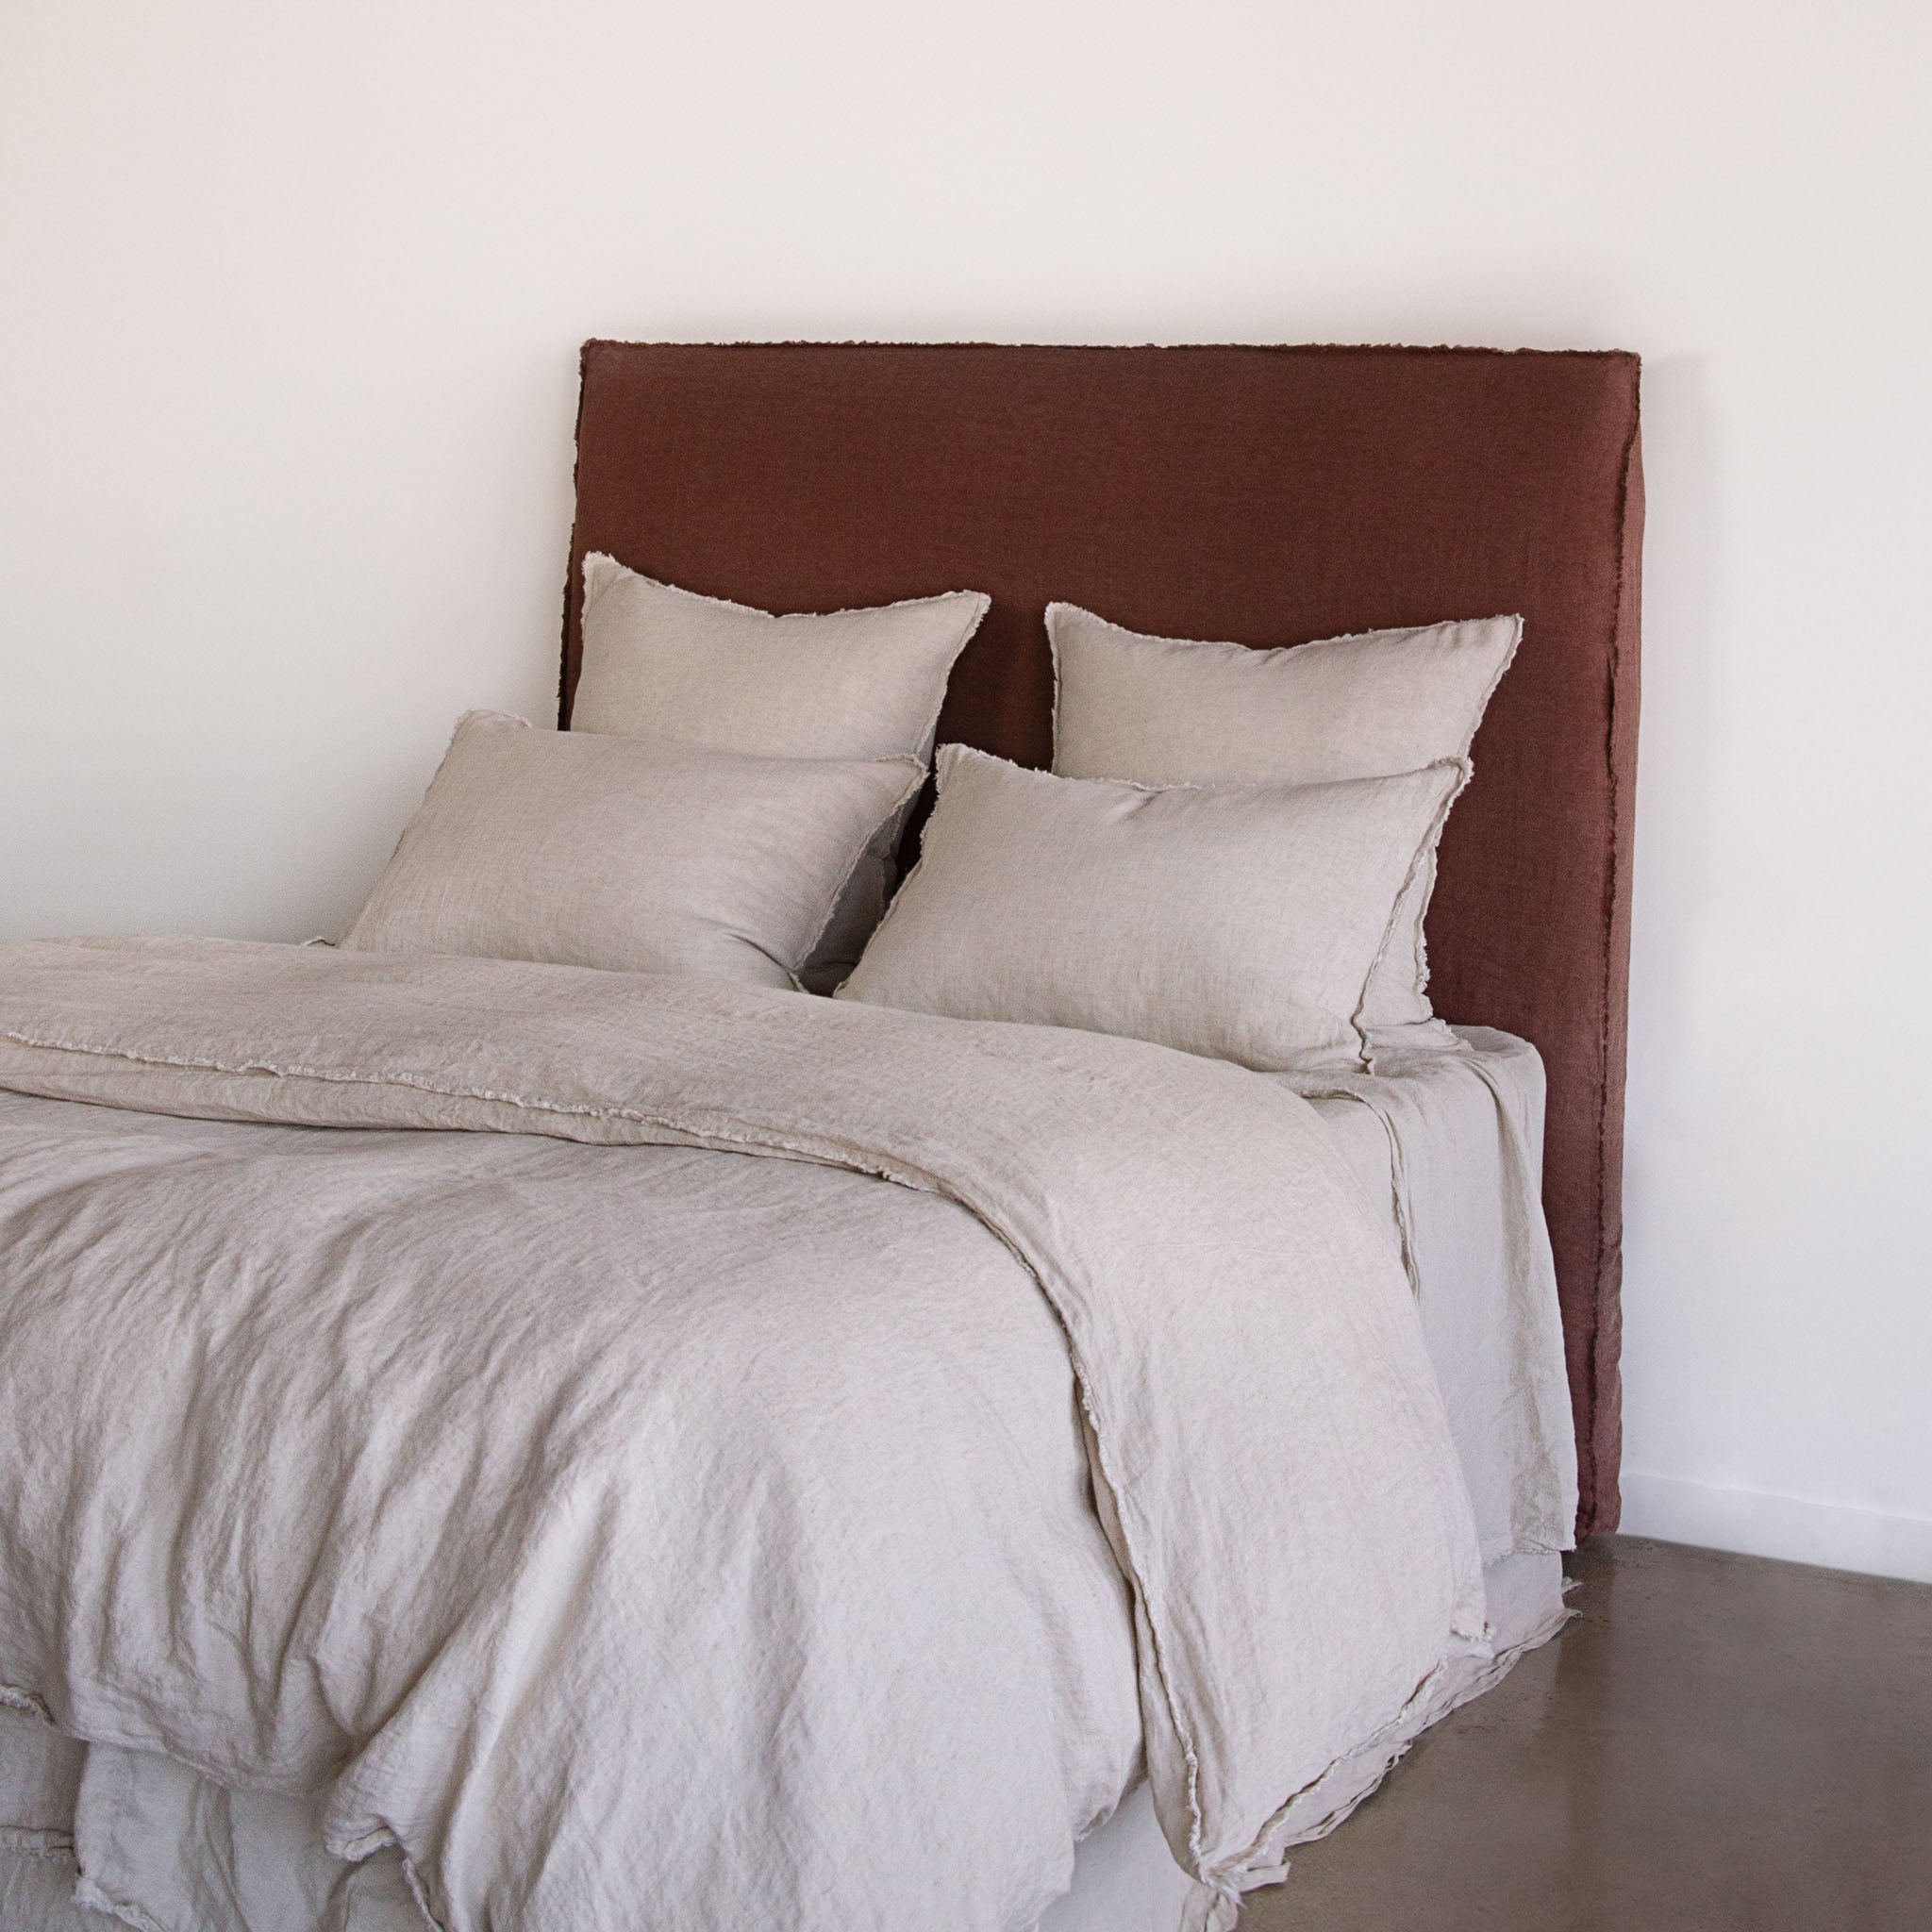 Linen Bedhead | Removable Linen Cover | Hale Mercantile Co.